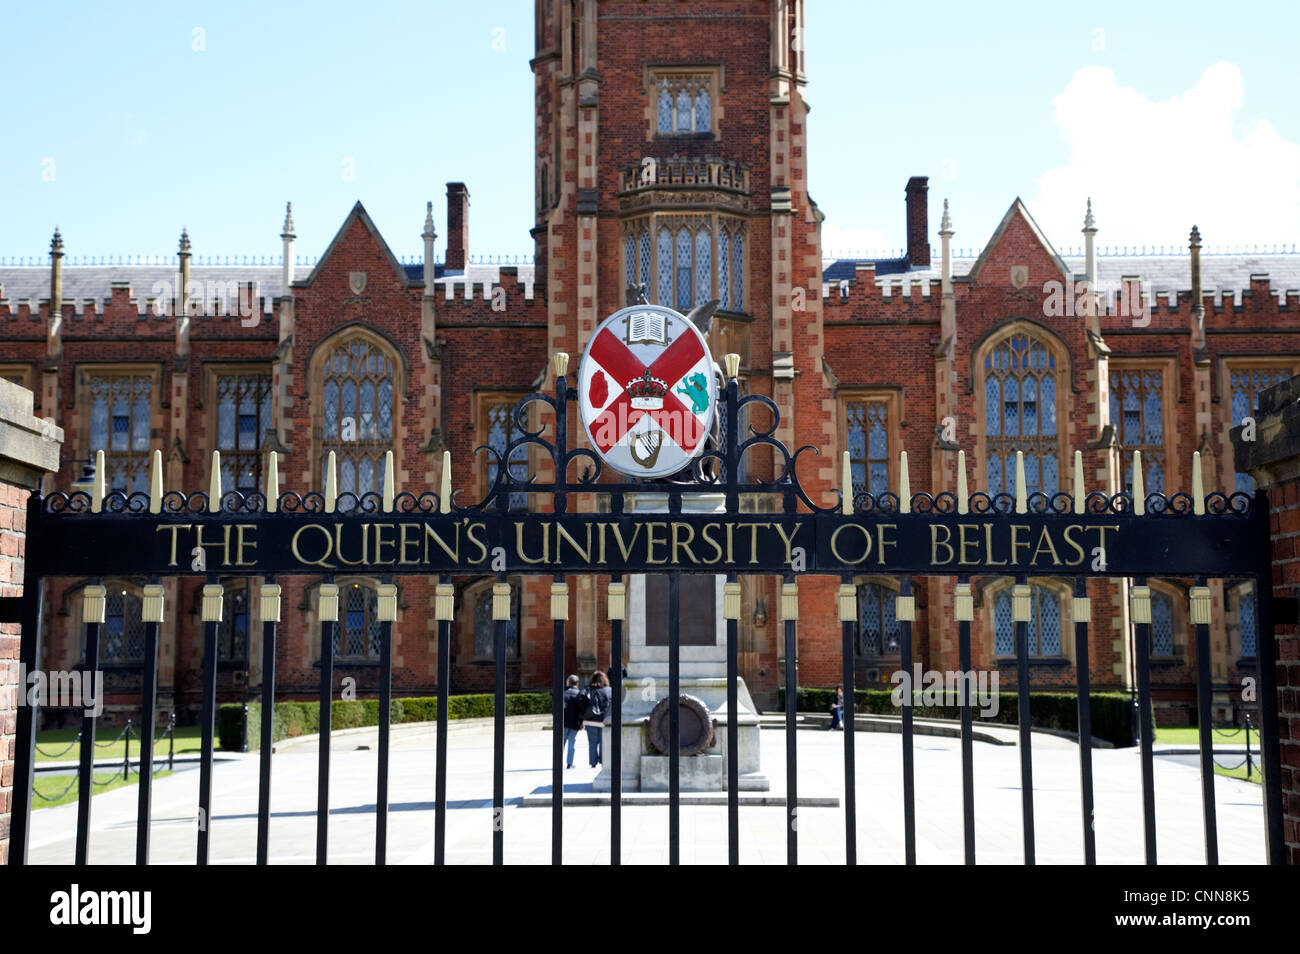 Gates en dehors de l'édifice de l'Université Queens lanyon Belfast Irlande du Nord UK Banque D'Images